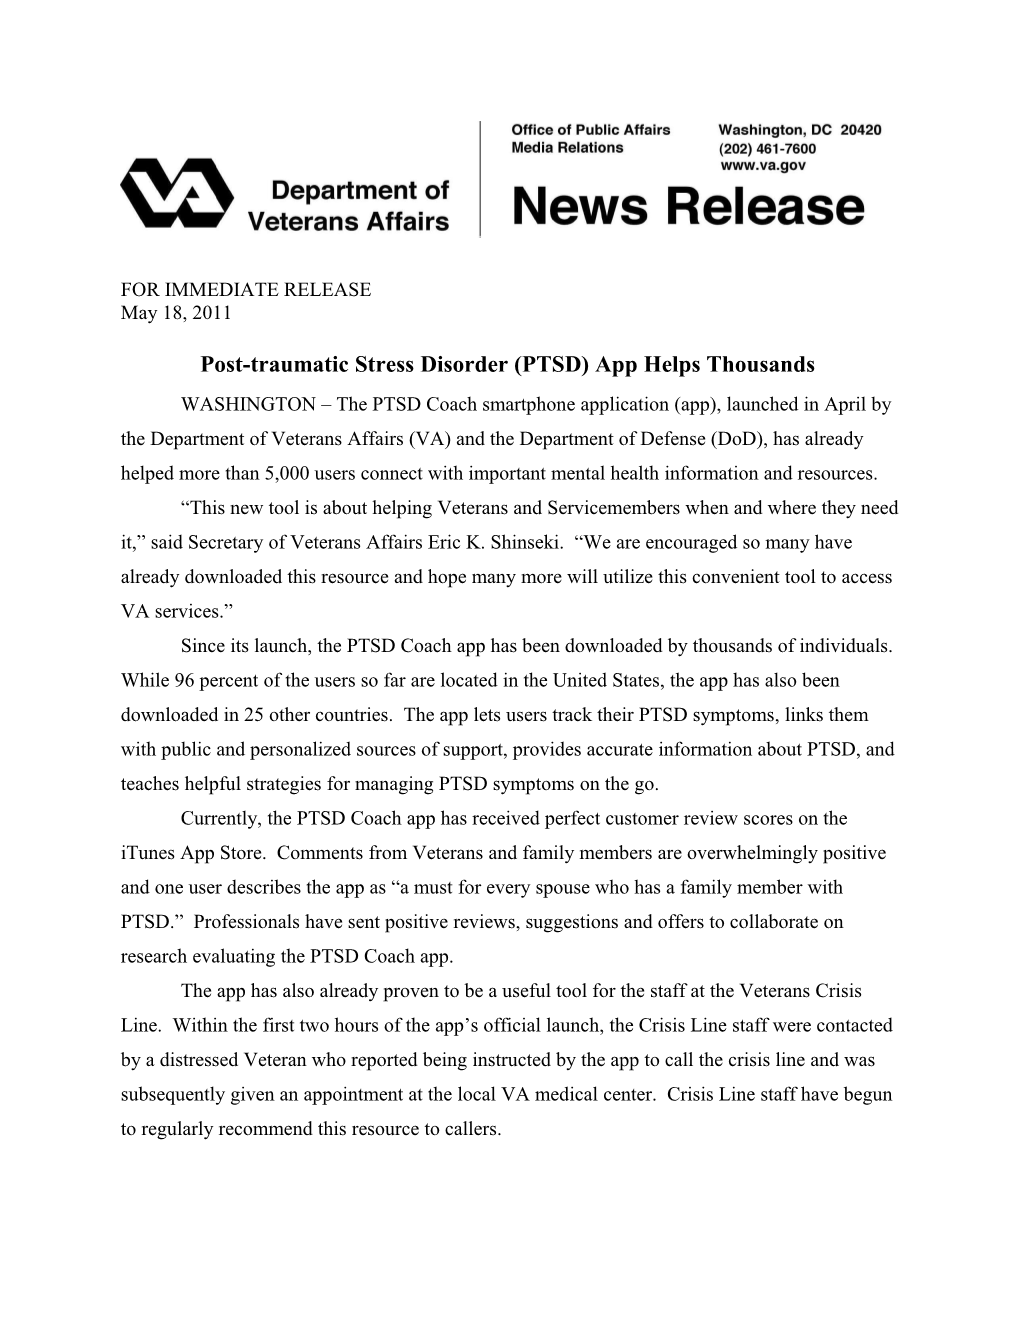 PTSD Mobile App Successes Newsrelease Vhav1ka.110504